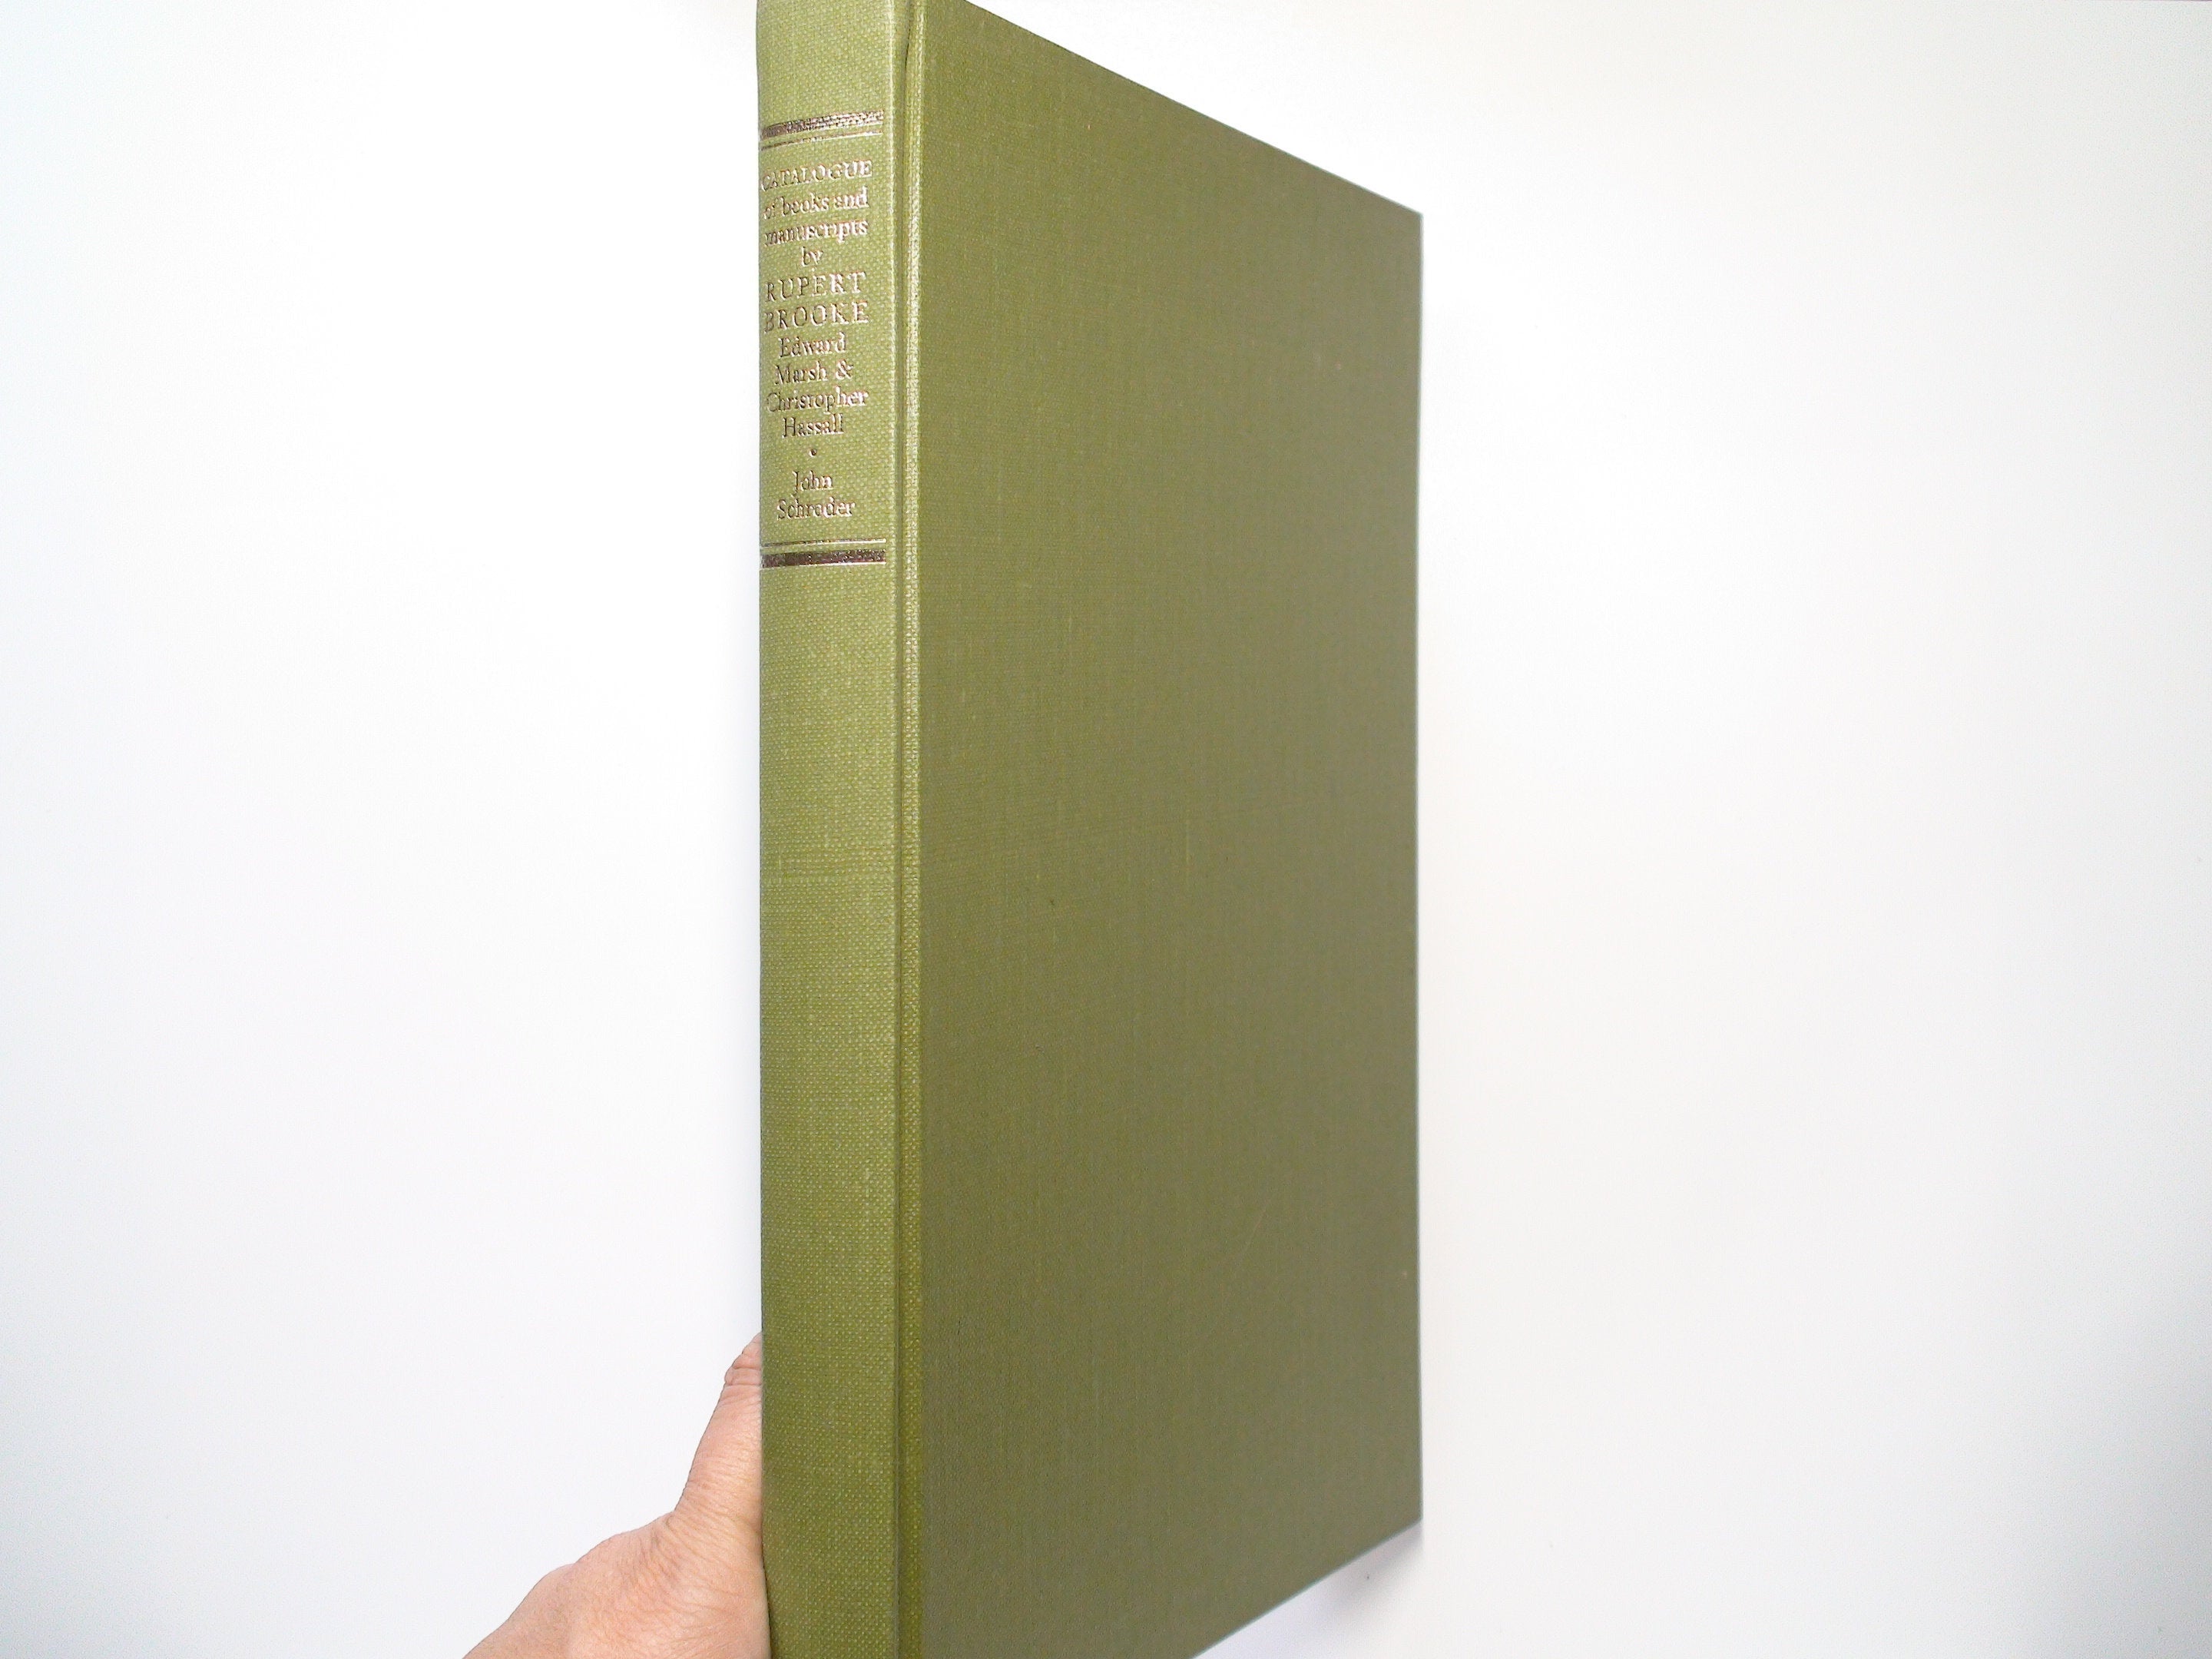 Catalogue of Books and Manuscripts by Rupert Brooke, John Schroder, 1st Ed, 1970